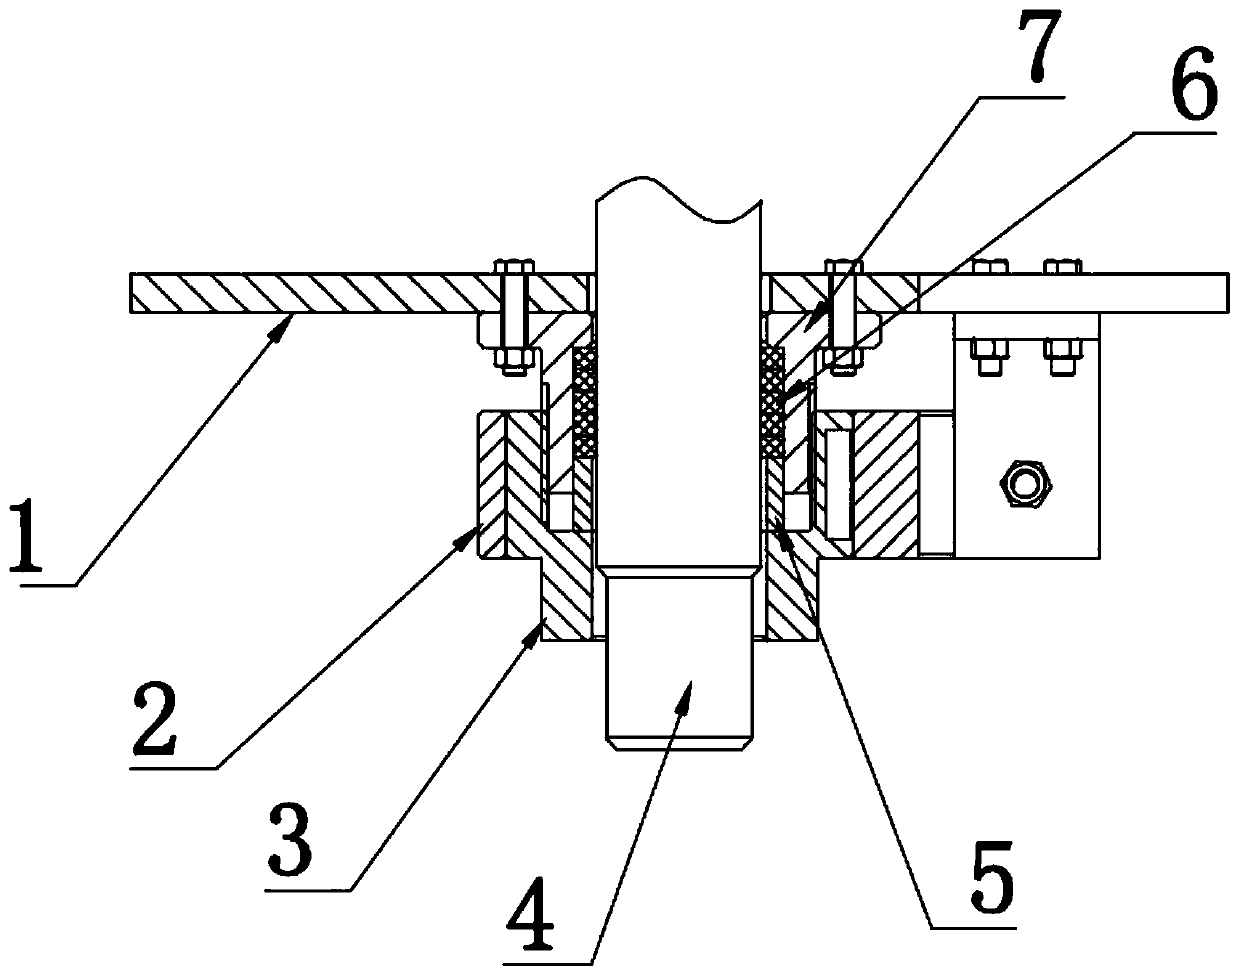 Shaft end sealing mechanism